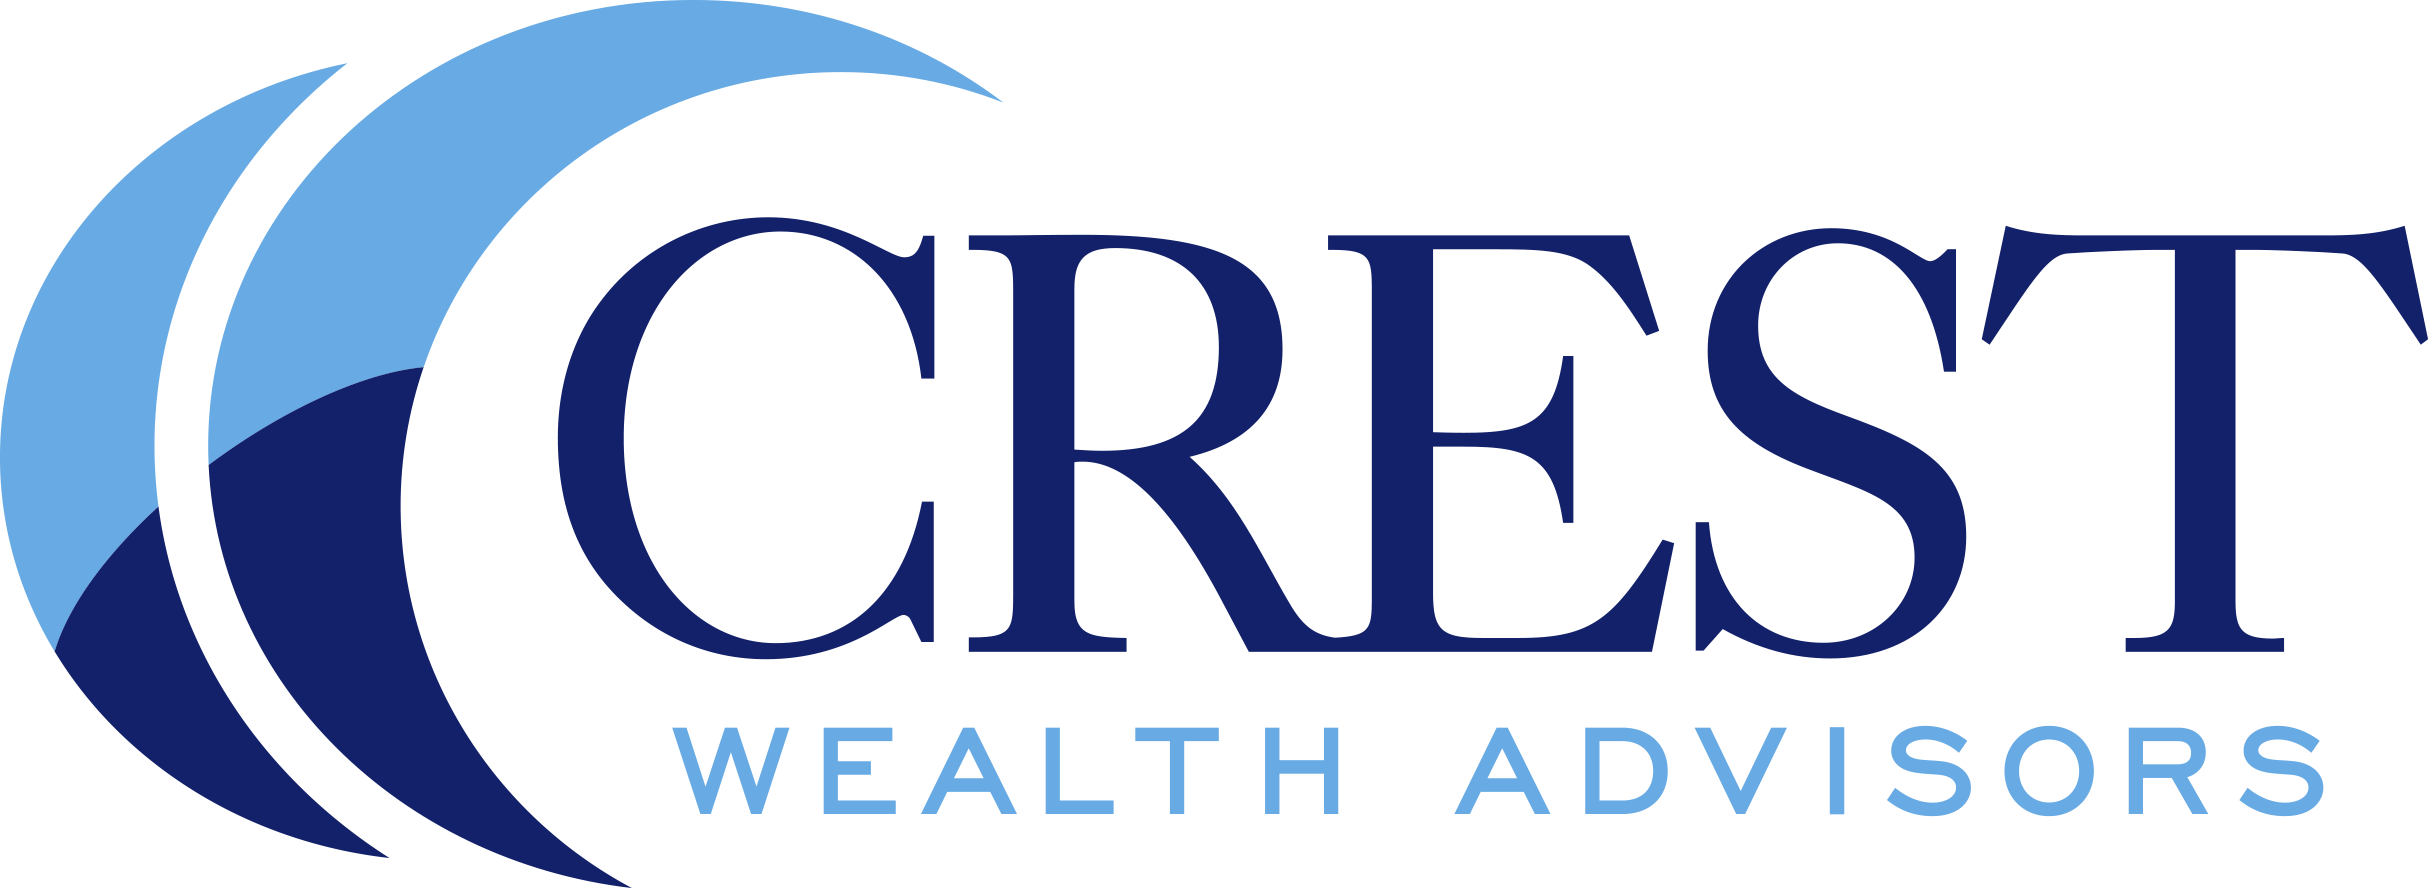 Crest Wealth Advisors LLC